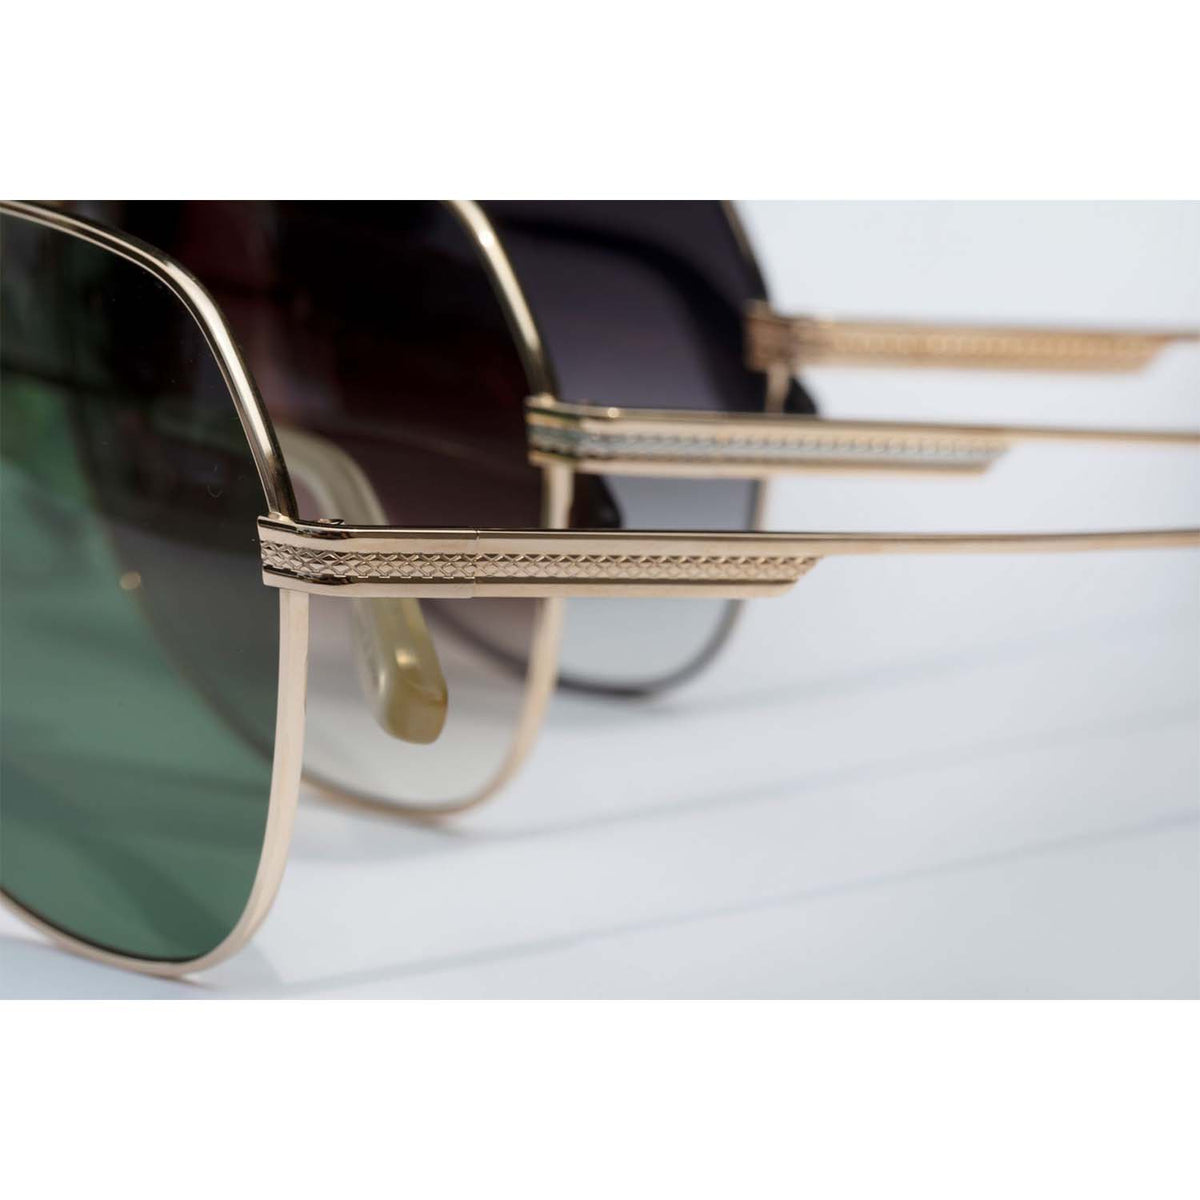 007 Avtak Sunglasses - Gold / Bottle Green Edition - By Barton Perreira (Pre-order) SUNGLASSSES Barton Perreira 